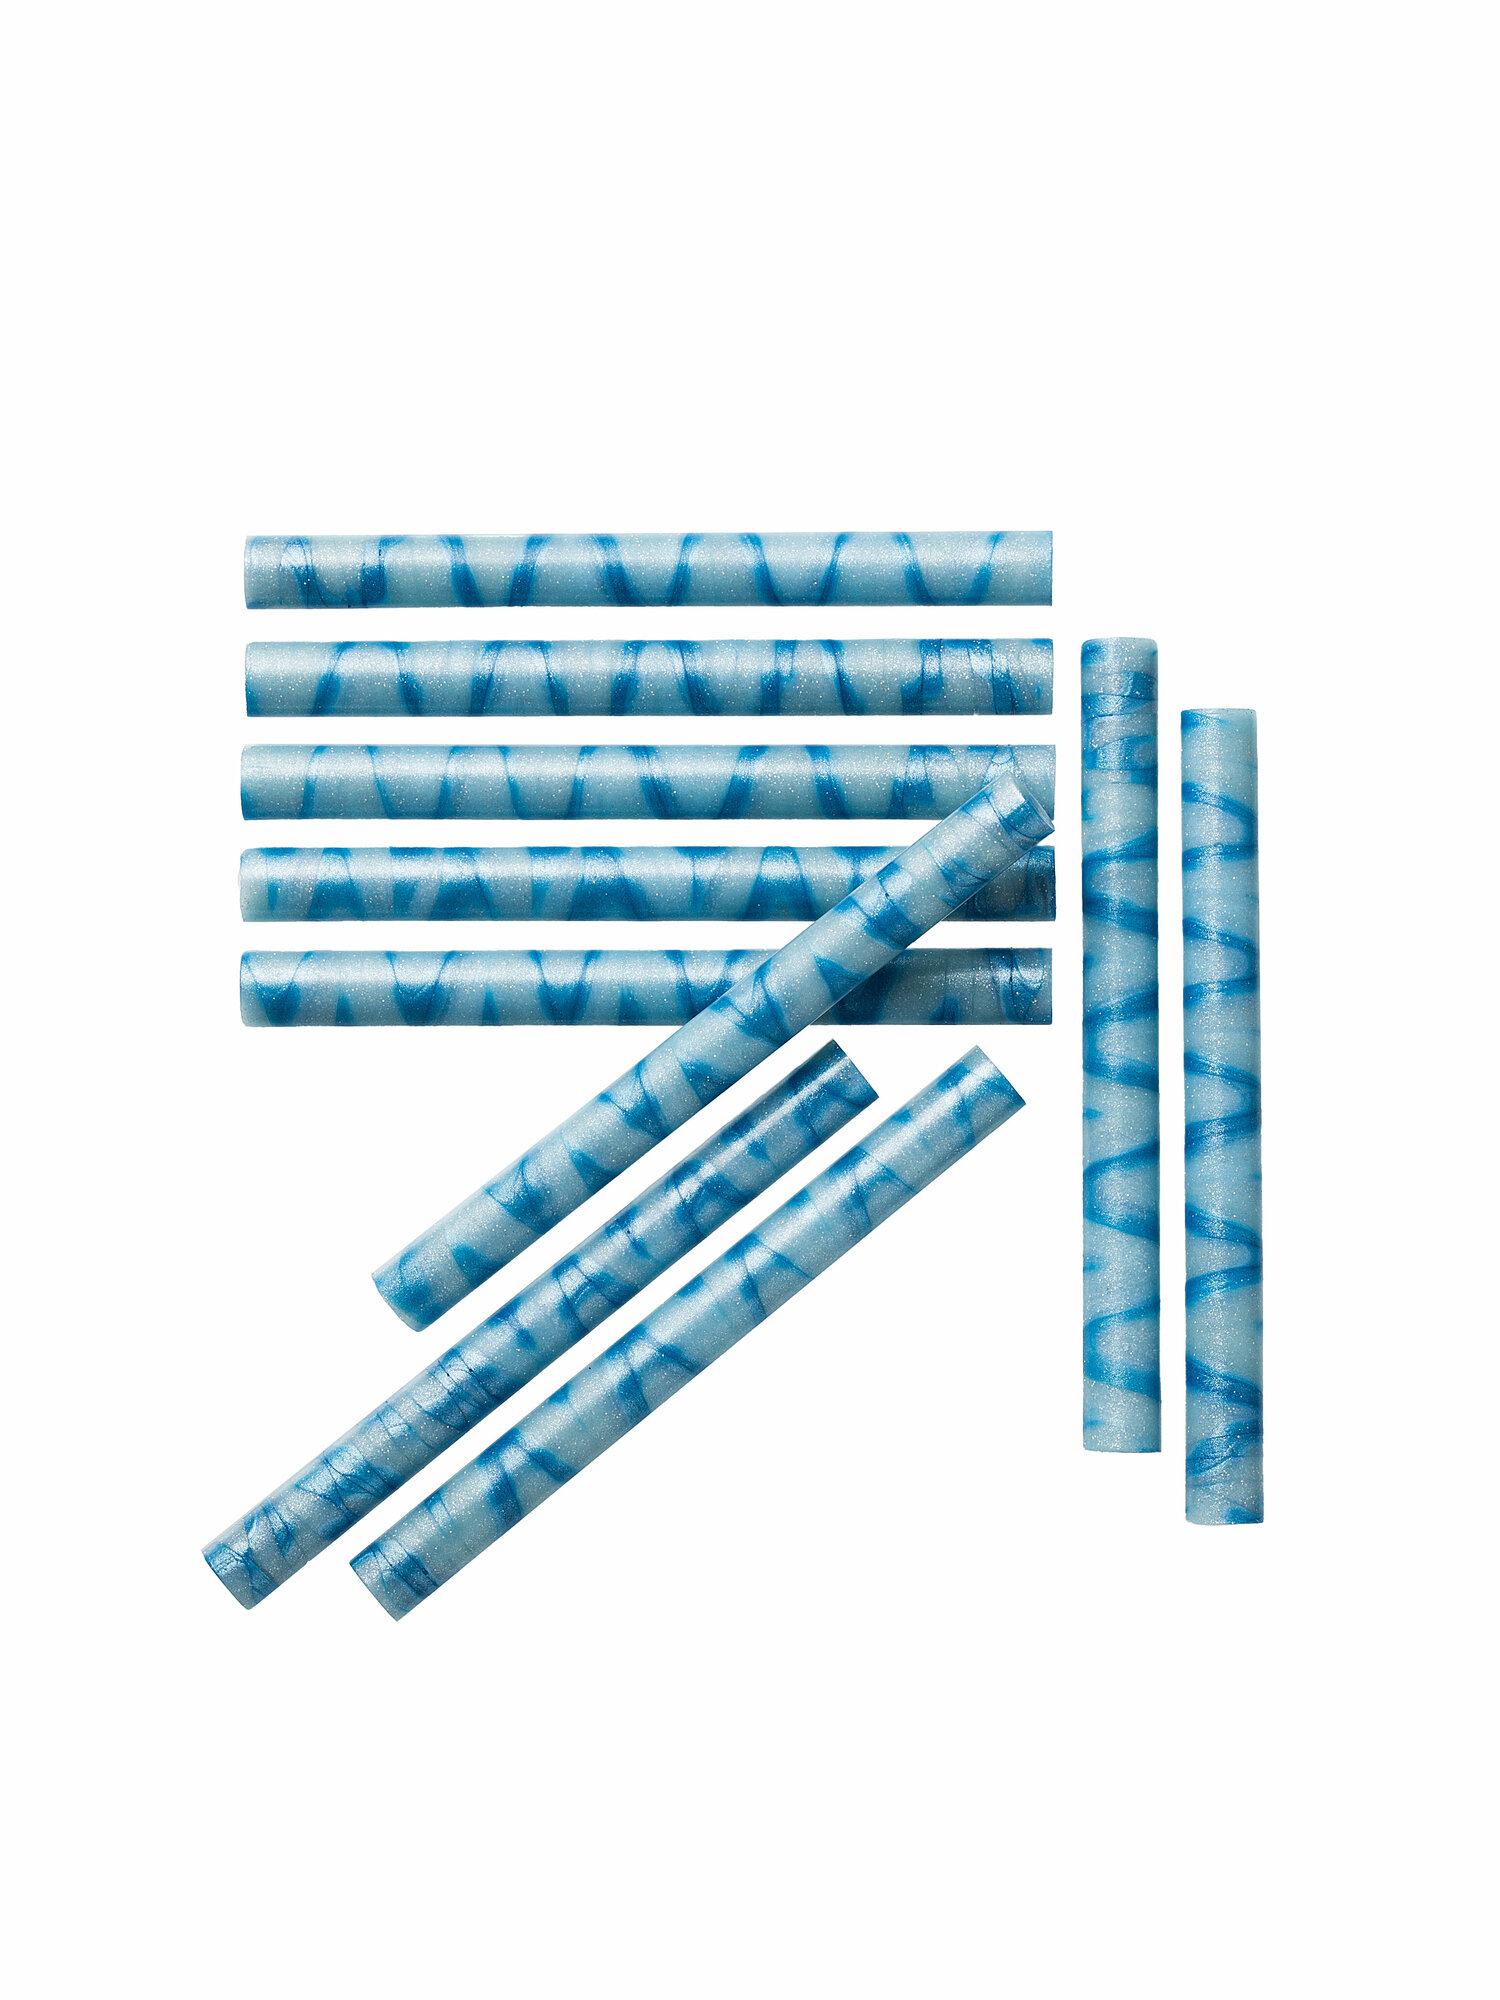 Сургучный стержень (палочка), цвет небесный микс (голубой/синий), 10 штуки